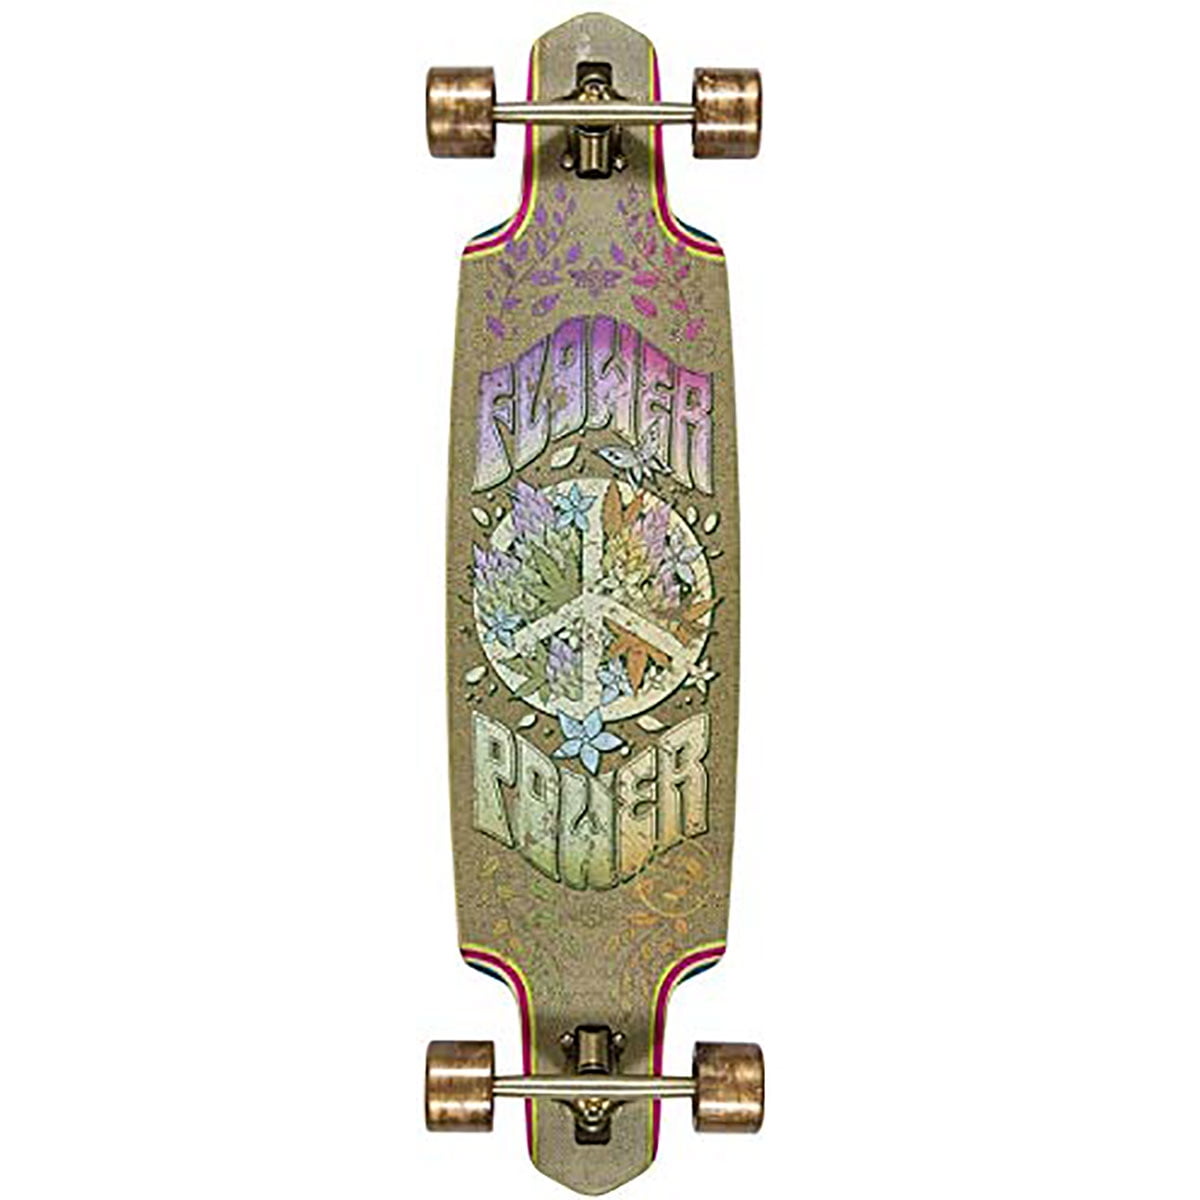 Duster Flower Power Skateboard Complete,Hemp/Multi,38" L X 9.5" W - 26.5" WB